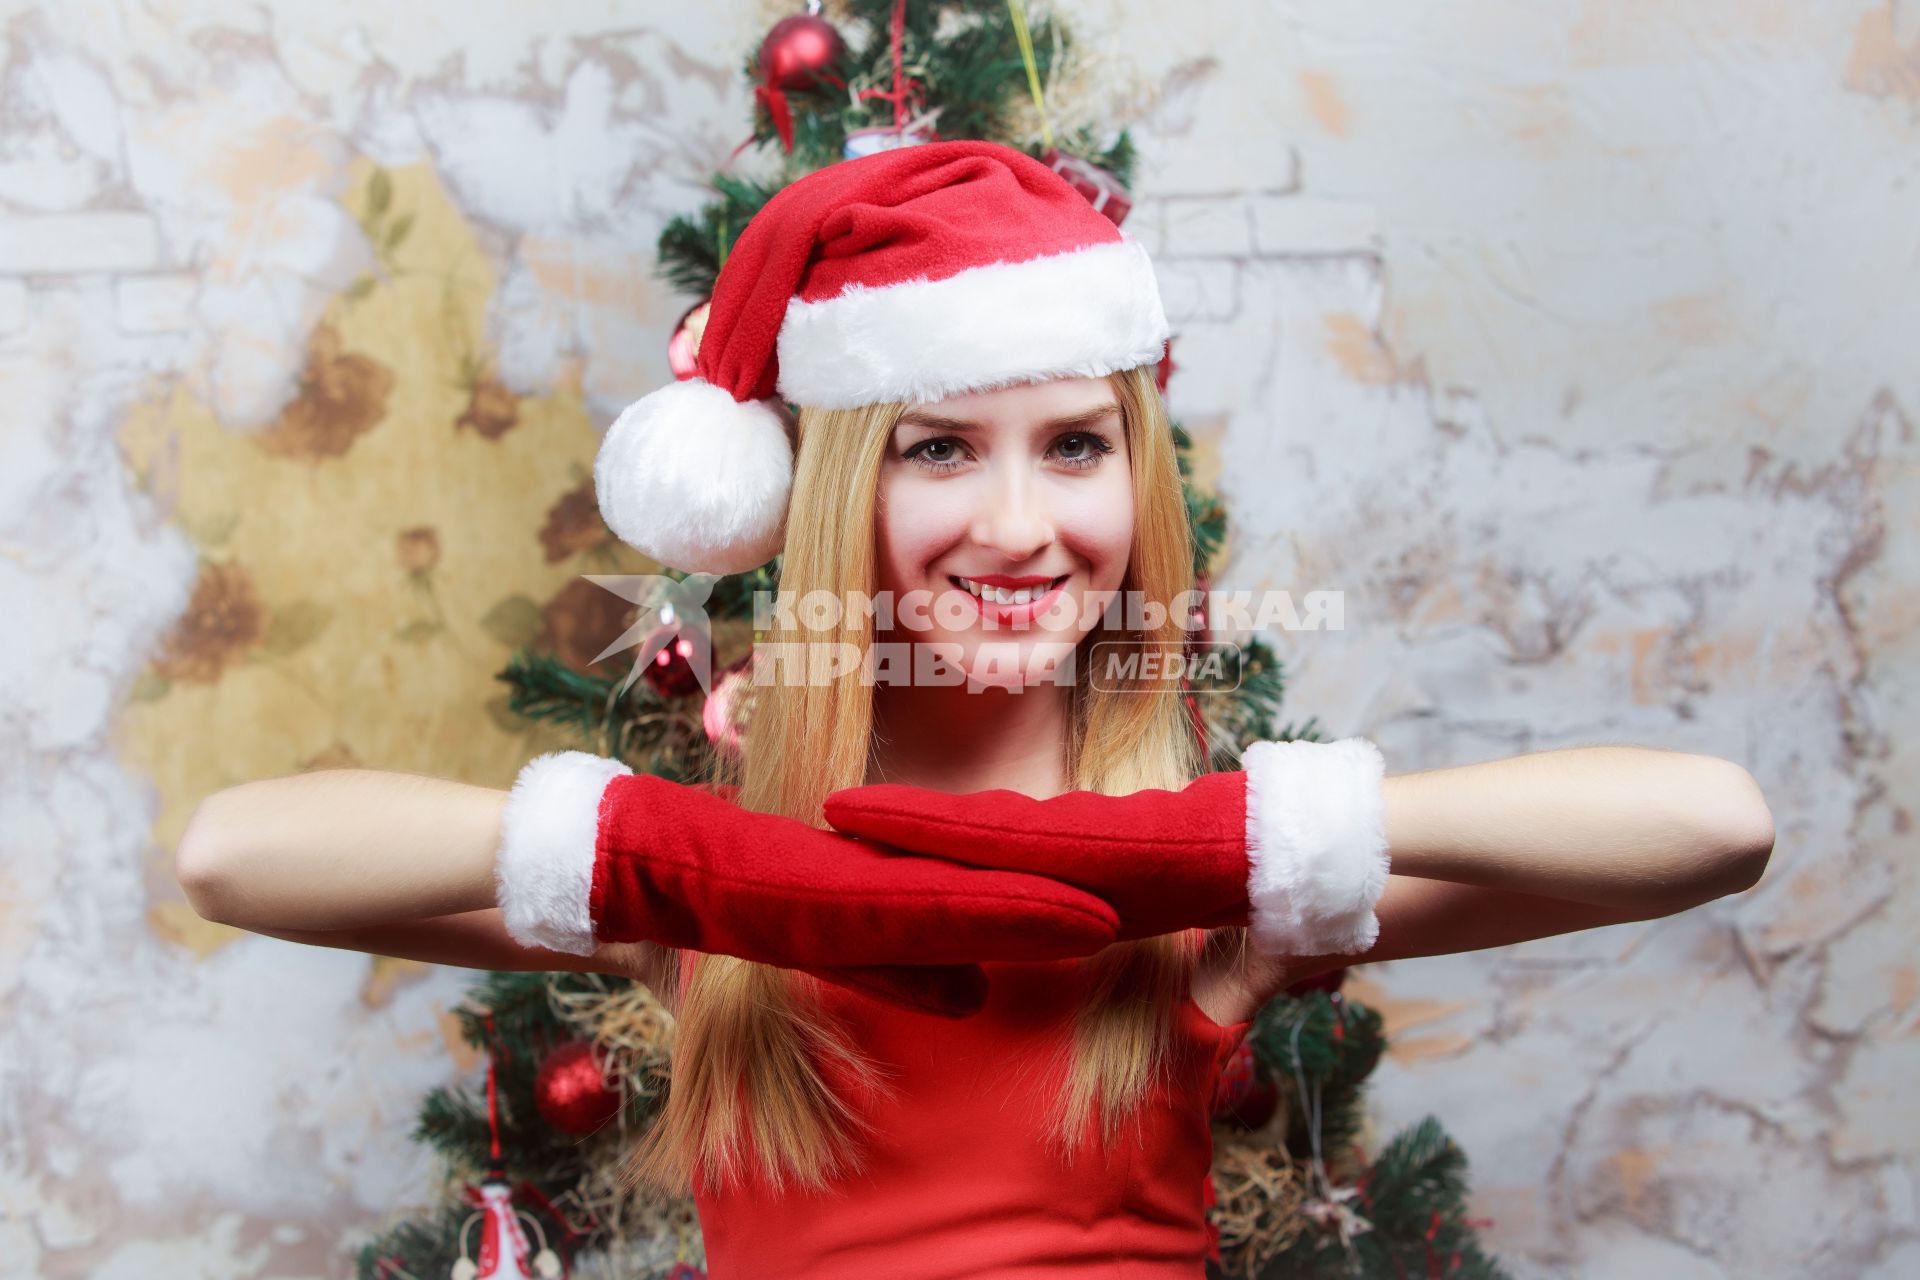 Девушка позирует на камеру на фоне новогодней елки. Снято в студии.